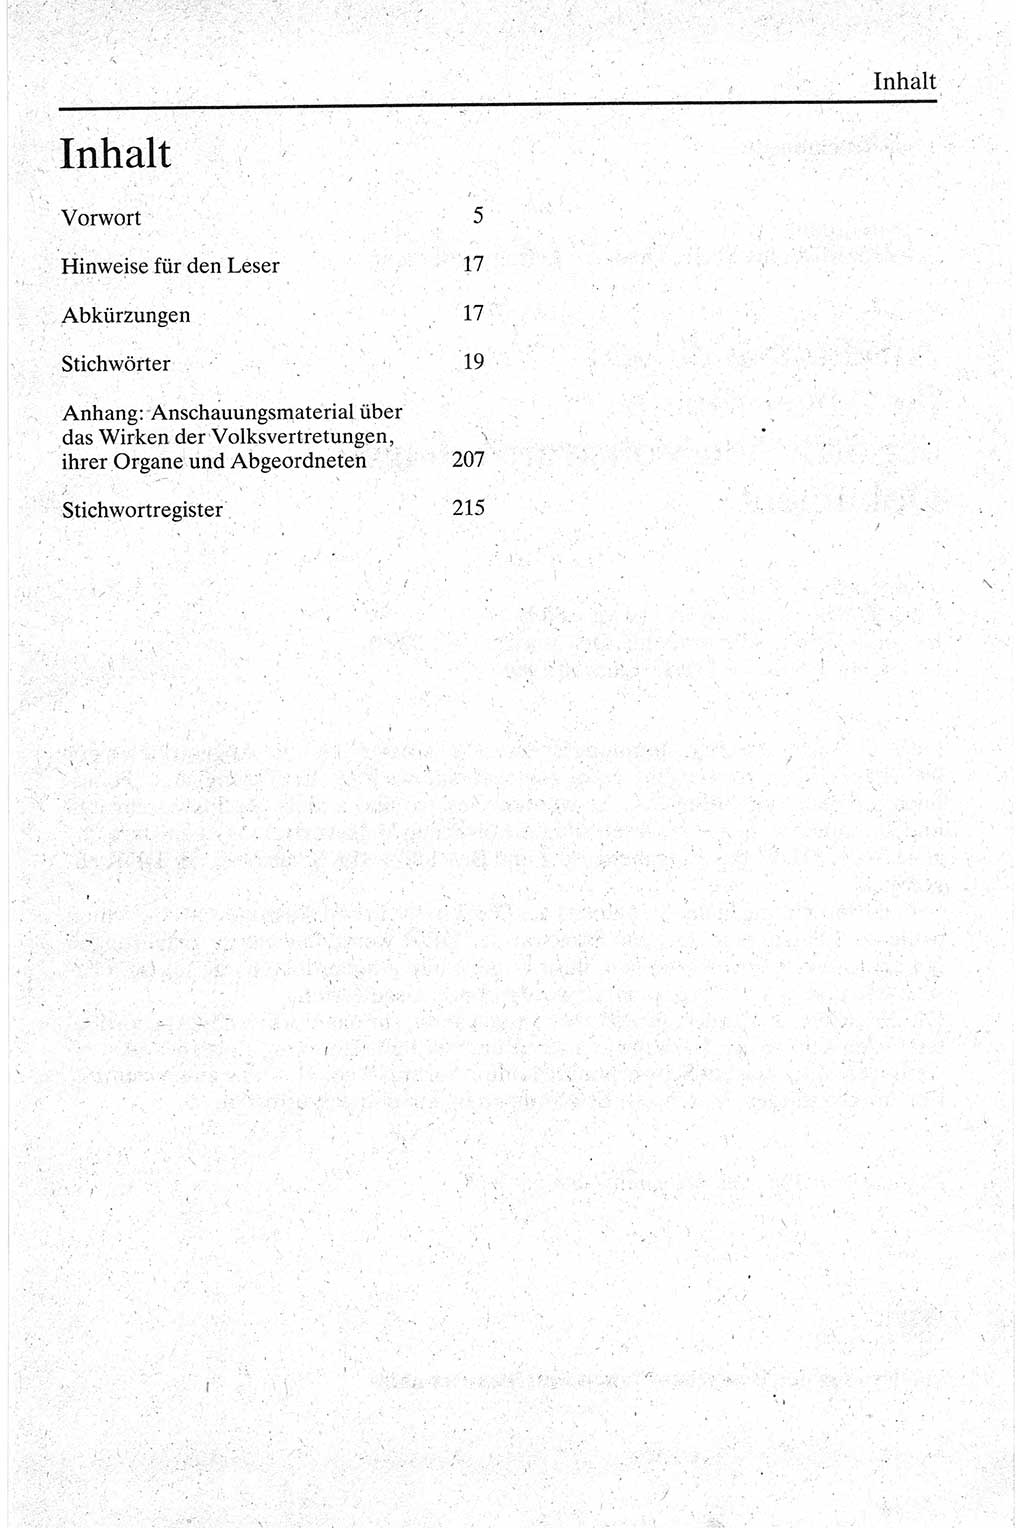 Handbuch für den Abgeordneten [Deutsche Demokratische Republik (DDR)] 1984, Seite 221 (Hb. Abg. DDR 1984, S. 221)